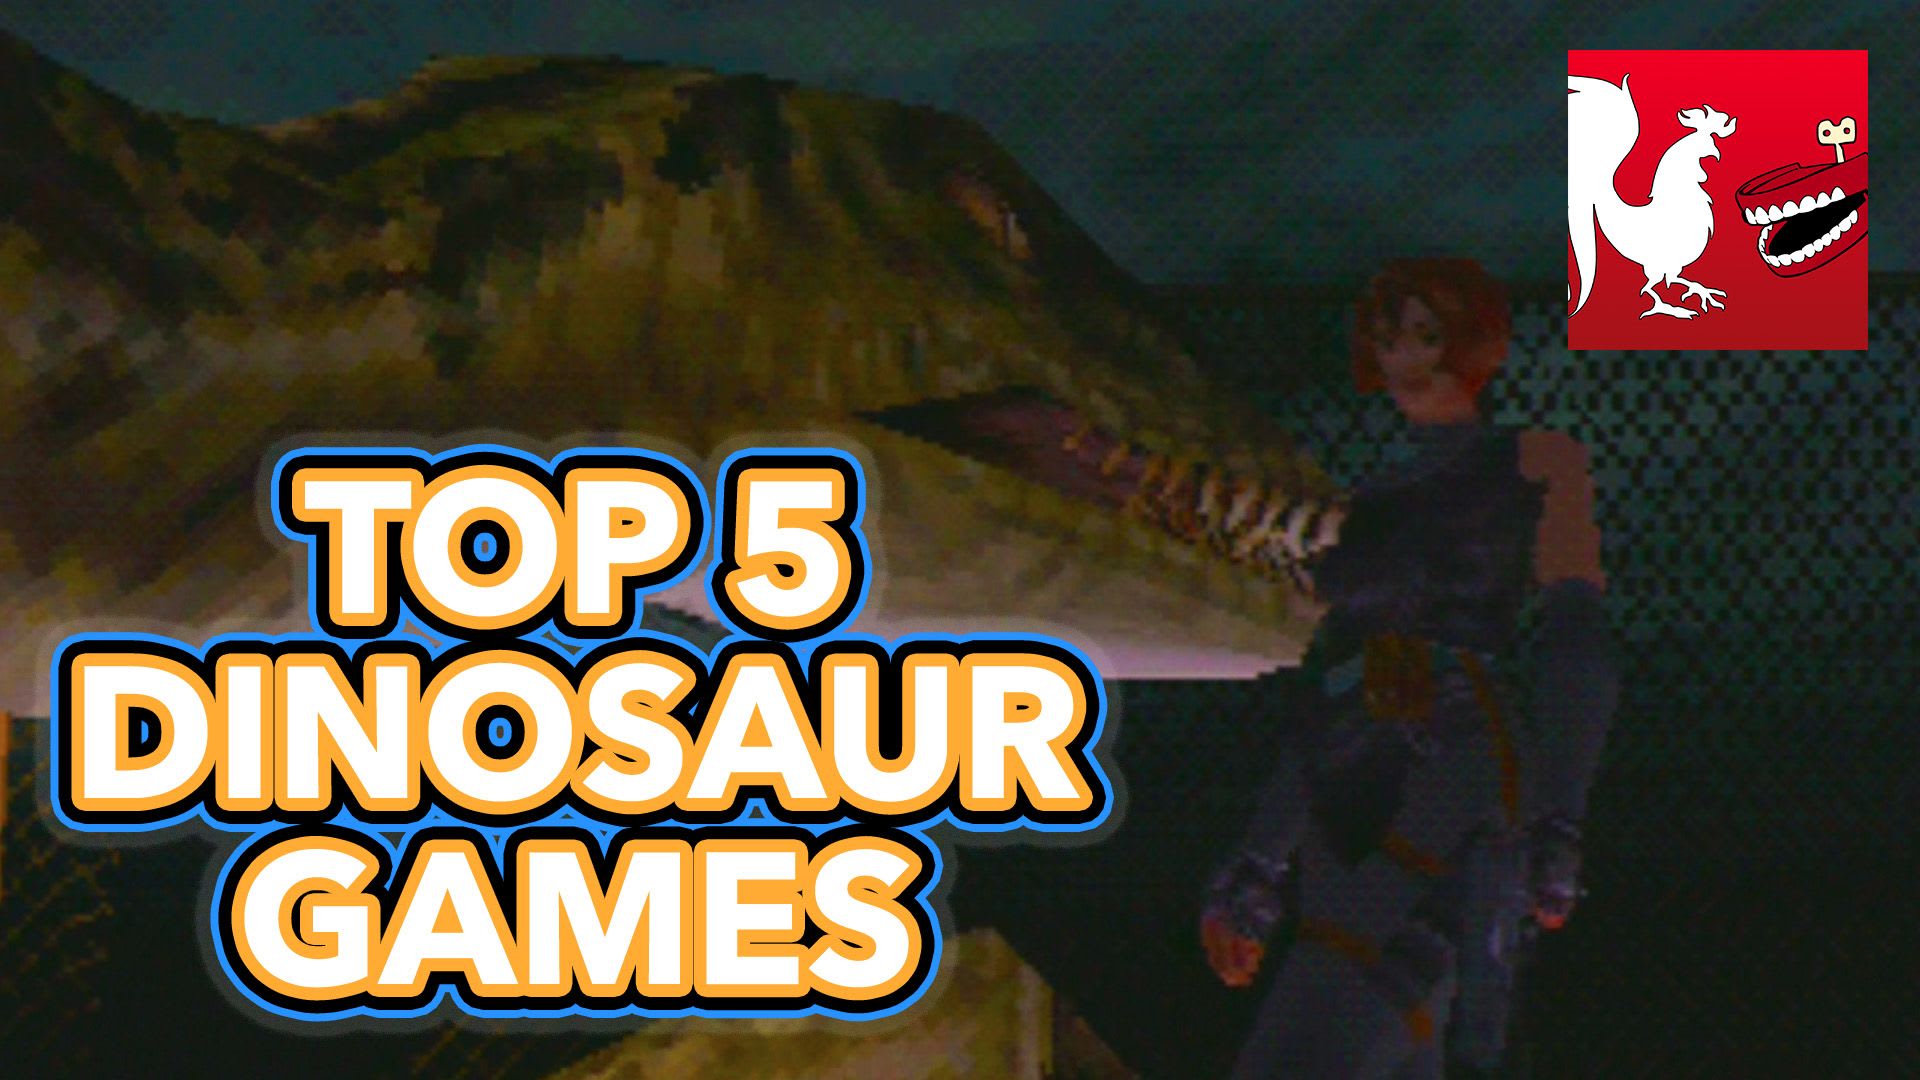 Best Dinosaur Games